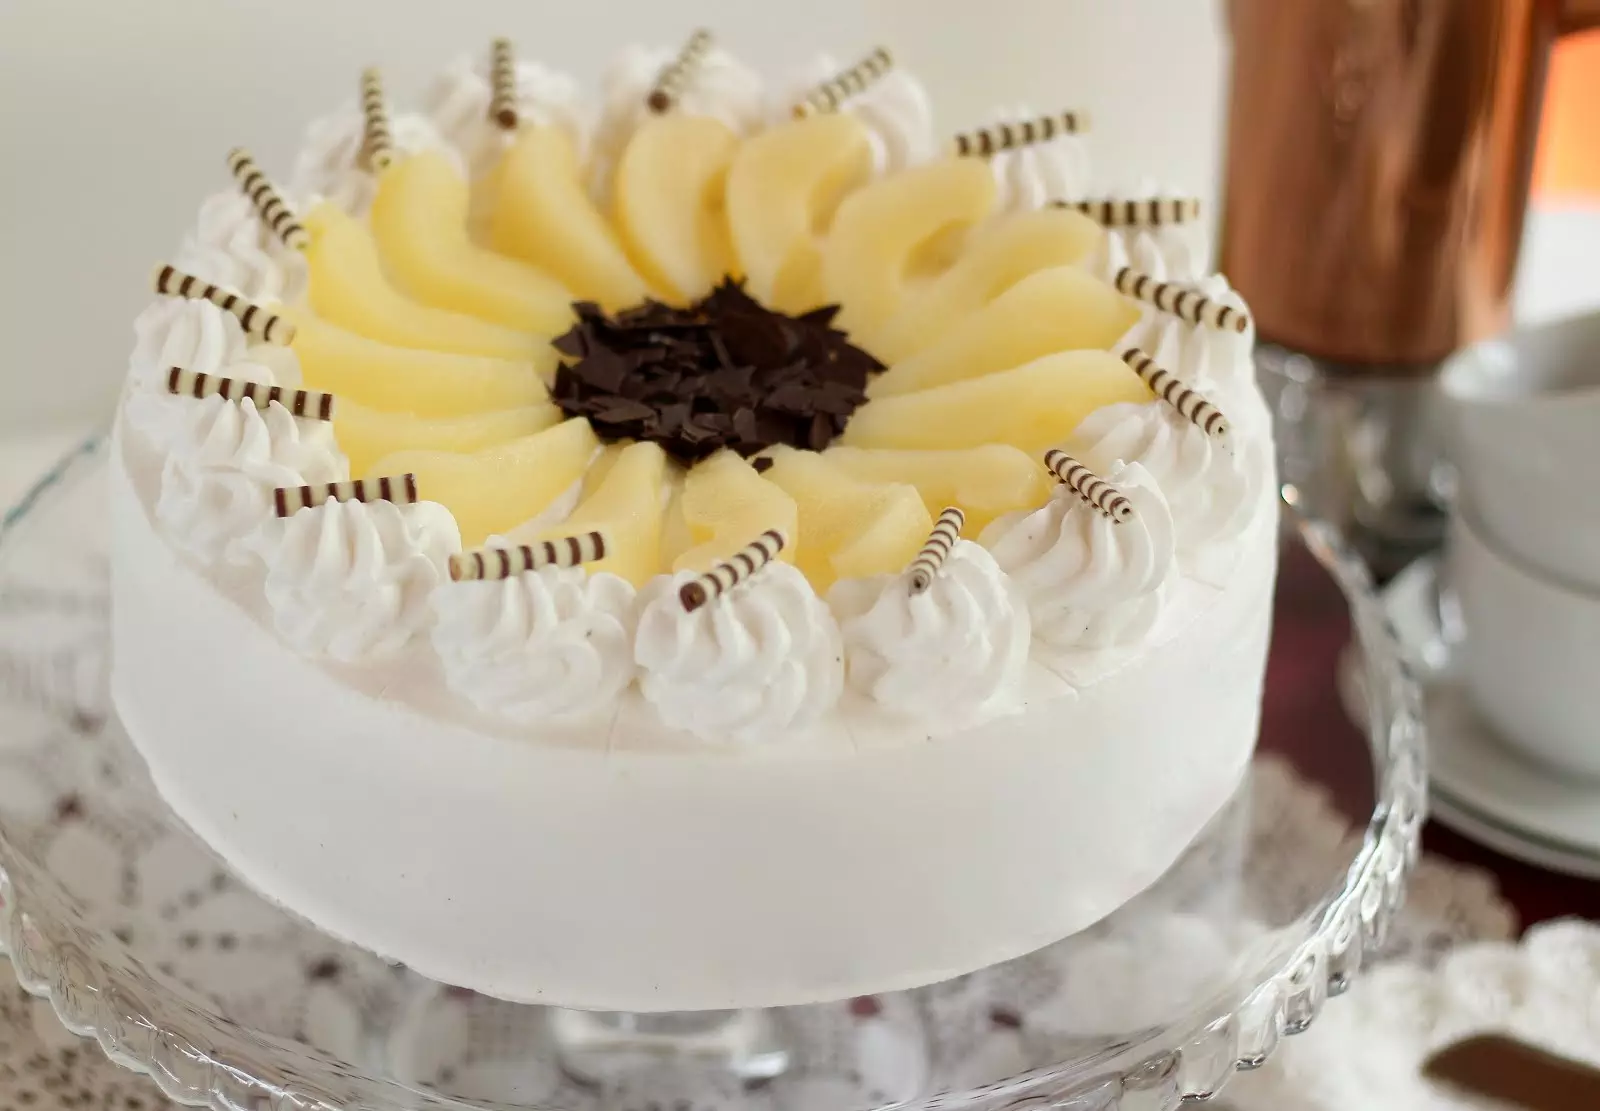 Traumhafte Birne-Helene-Torte | Torte mit Birnen und Schokolade | Rezept und Video von Sugarprincess